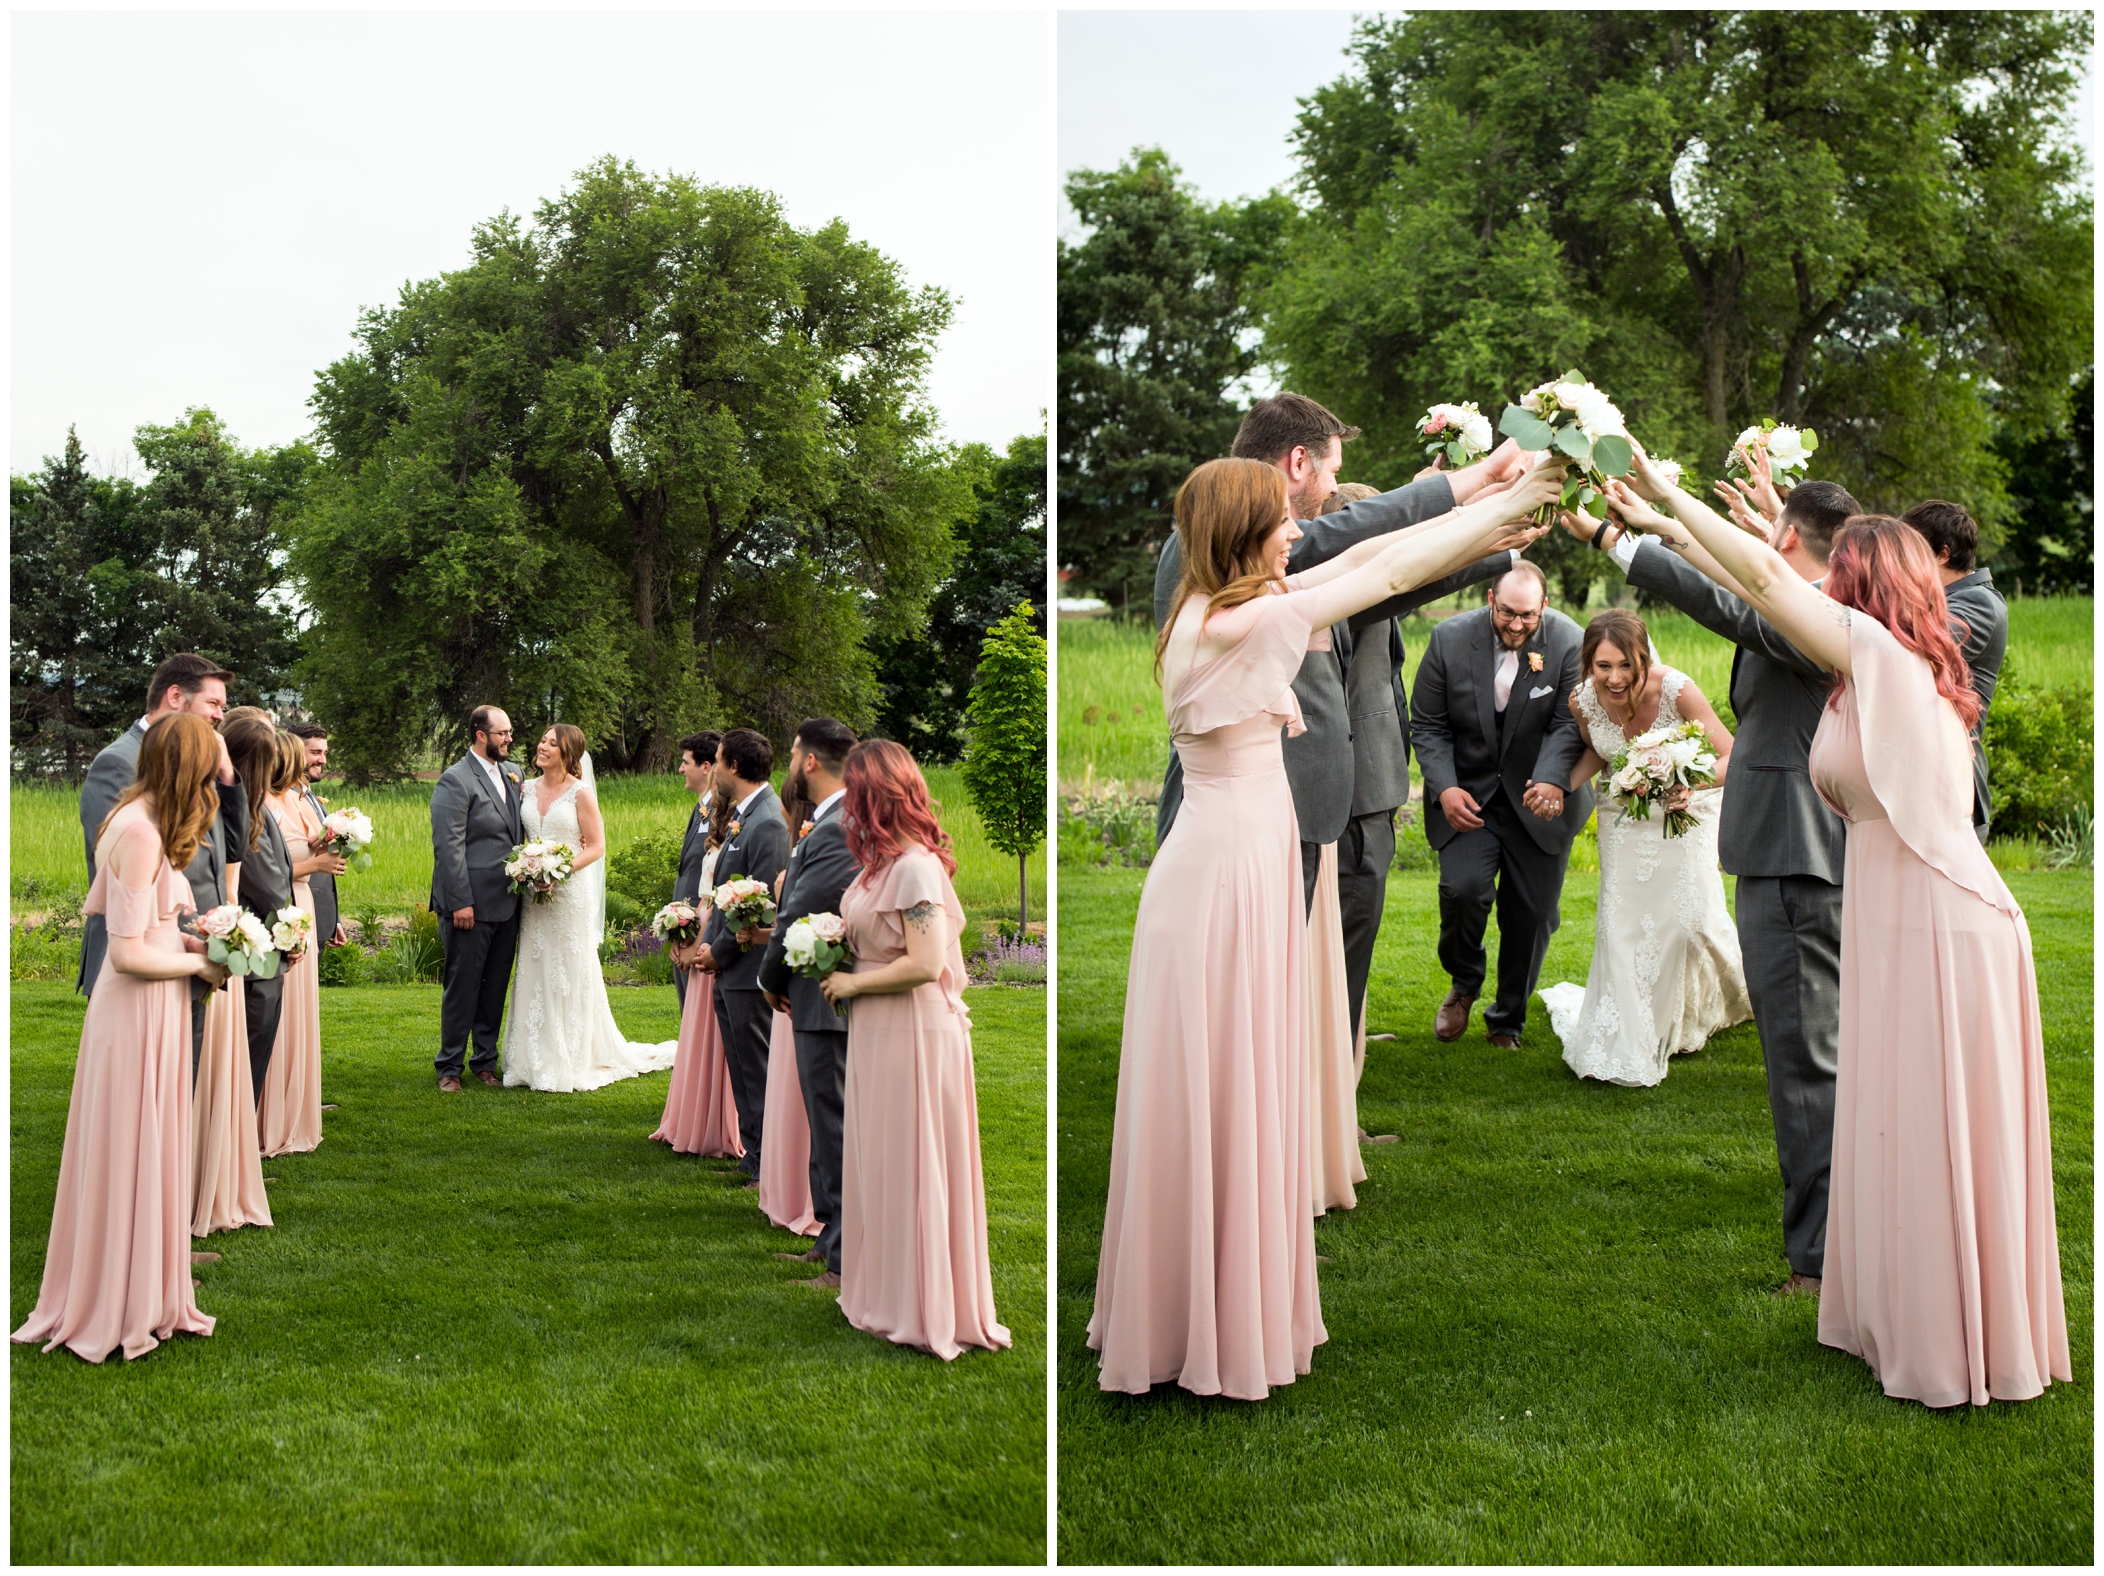 fun bridal party photos at Denver wedding at Chatfield Farms 